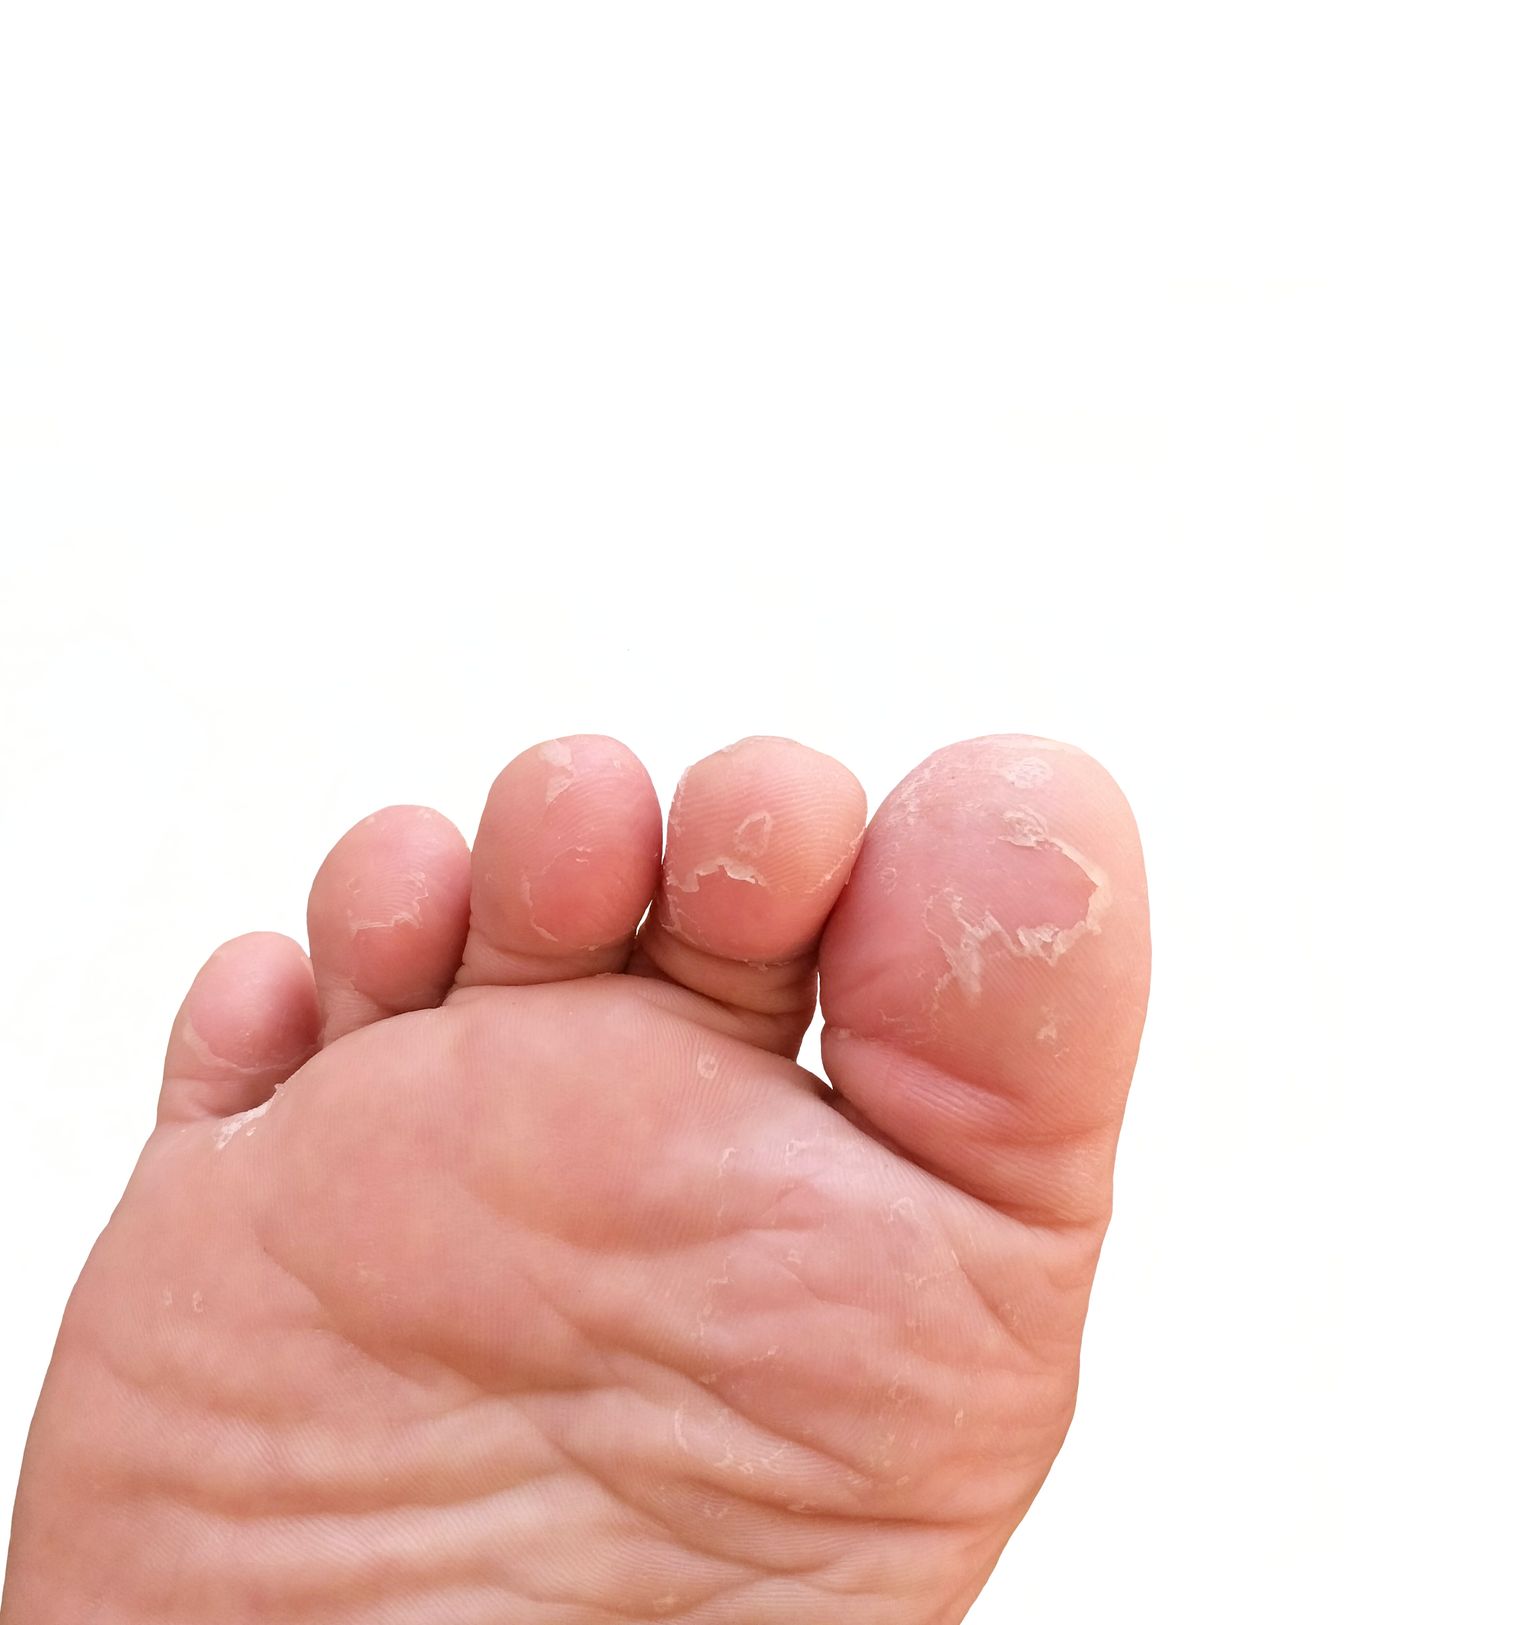 Sageli niiskeid sokke või kitsaid jalanõusid kandes on jalaseene tekkeks suurem risk.